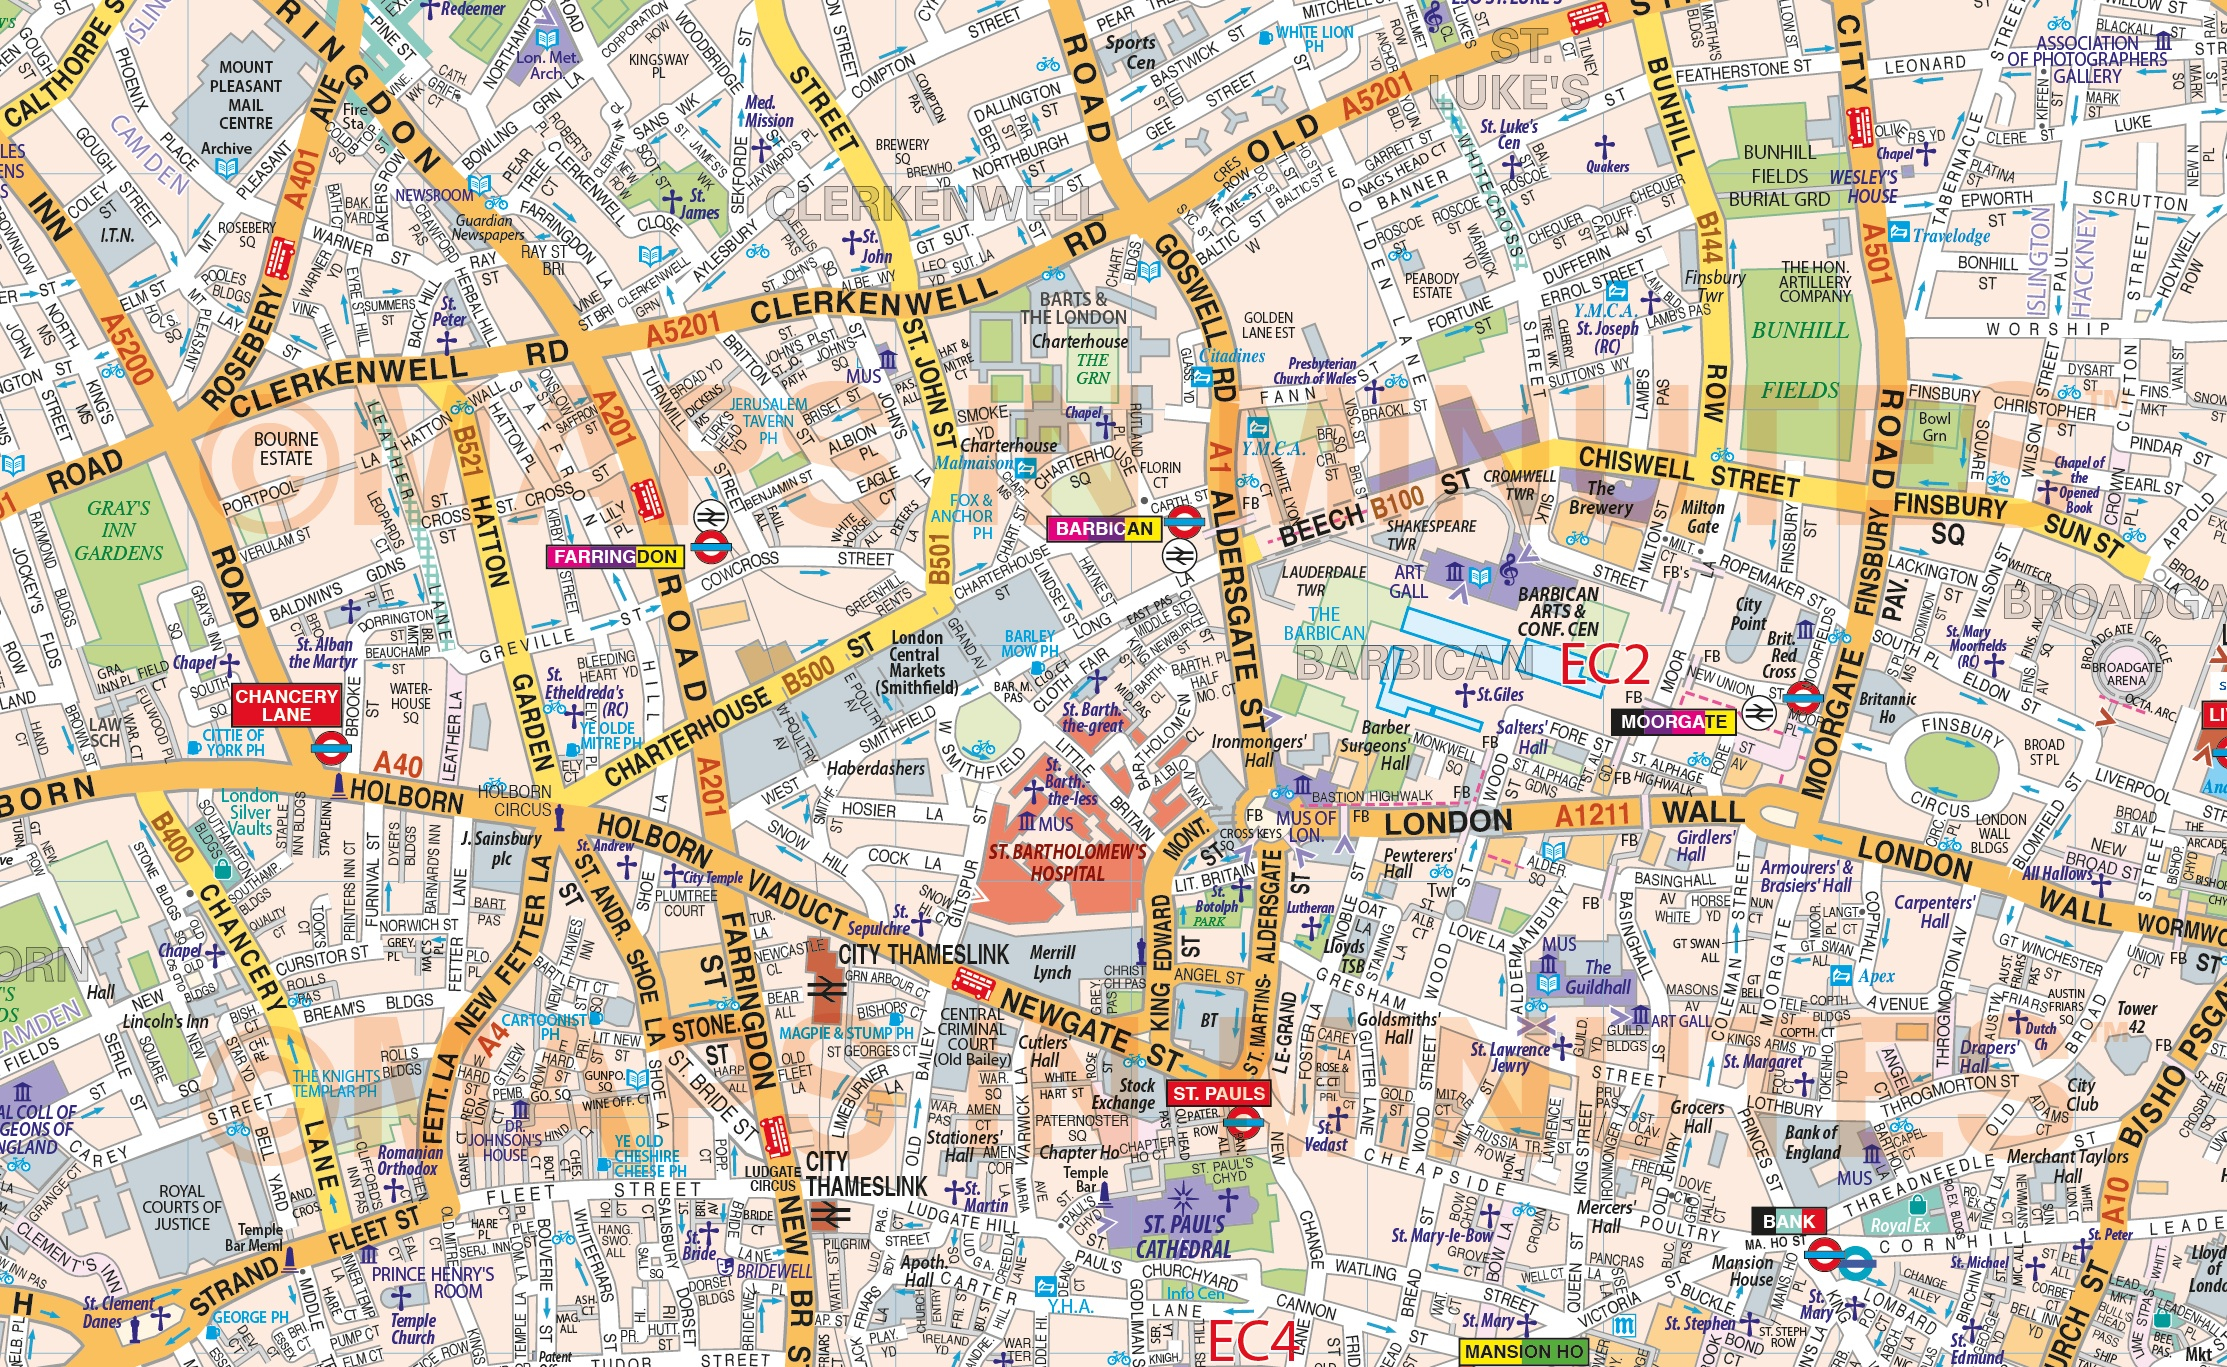 VINYL Central London Street Map Large Size 1 2m D X 1 67m W